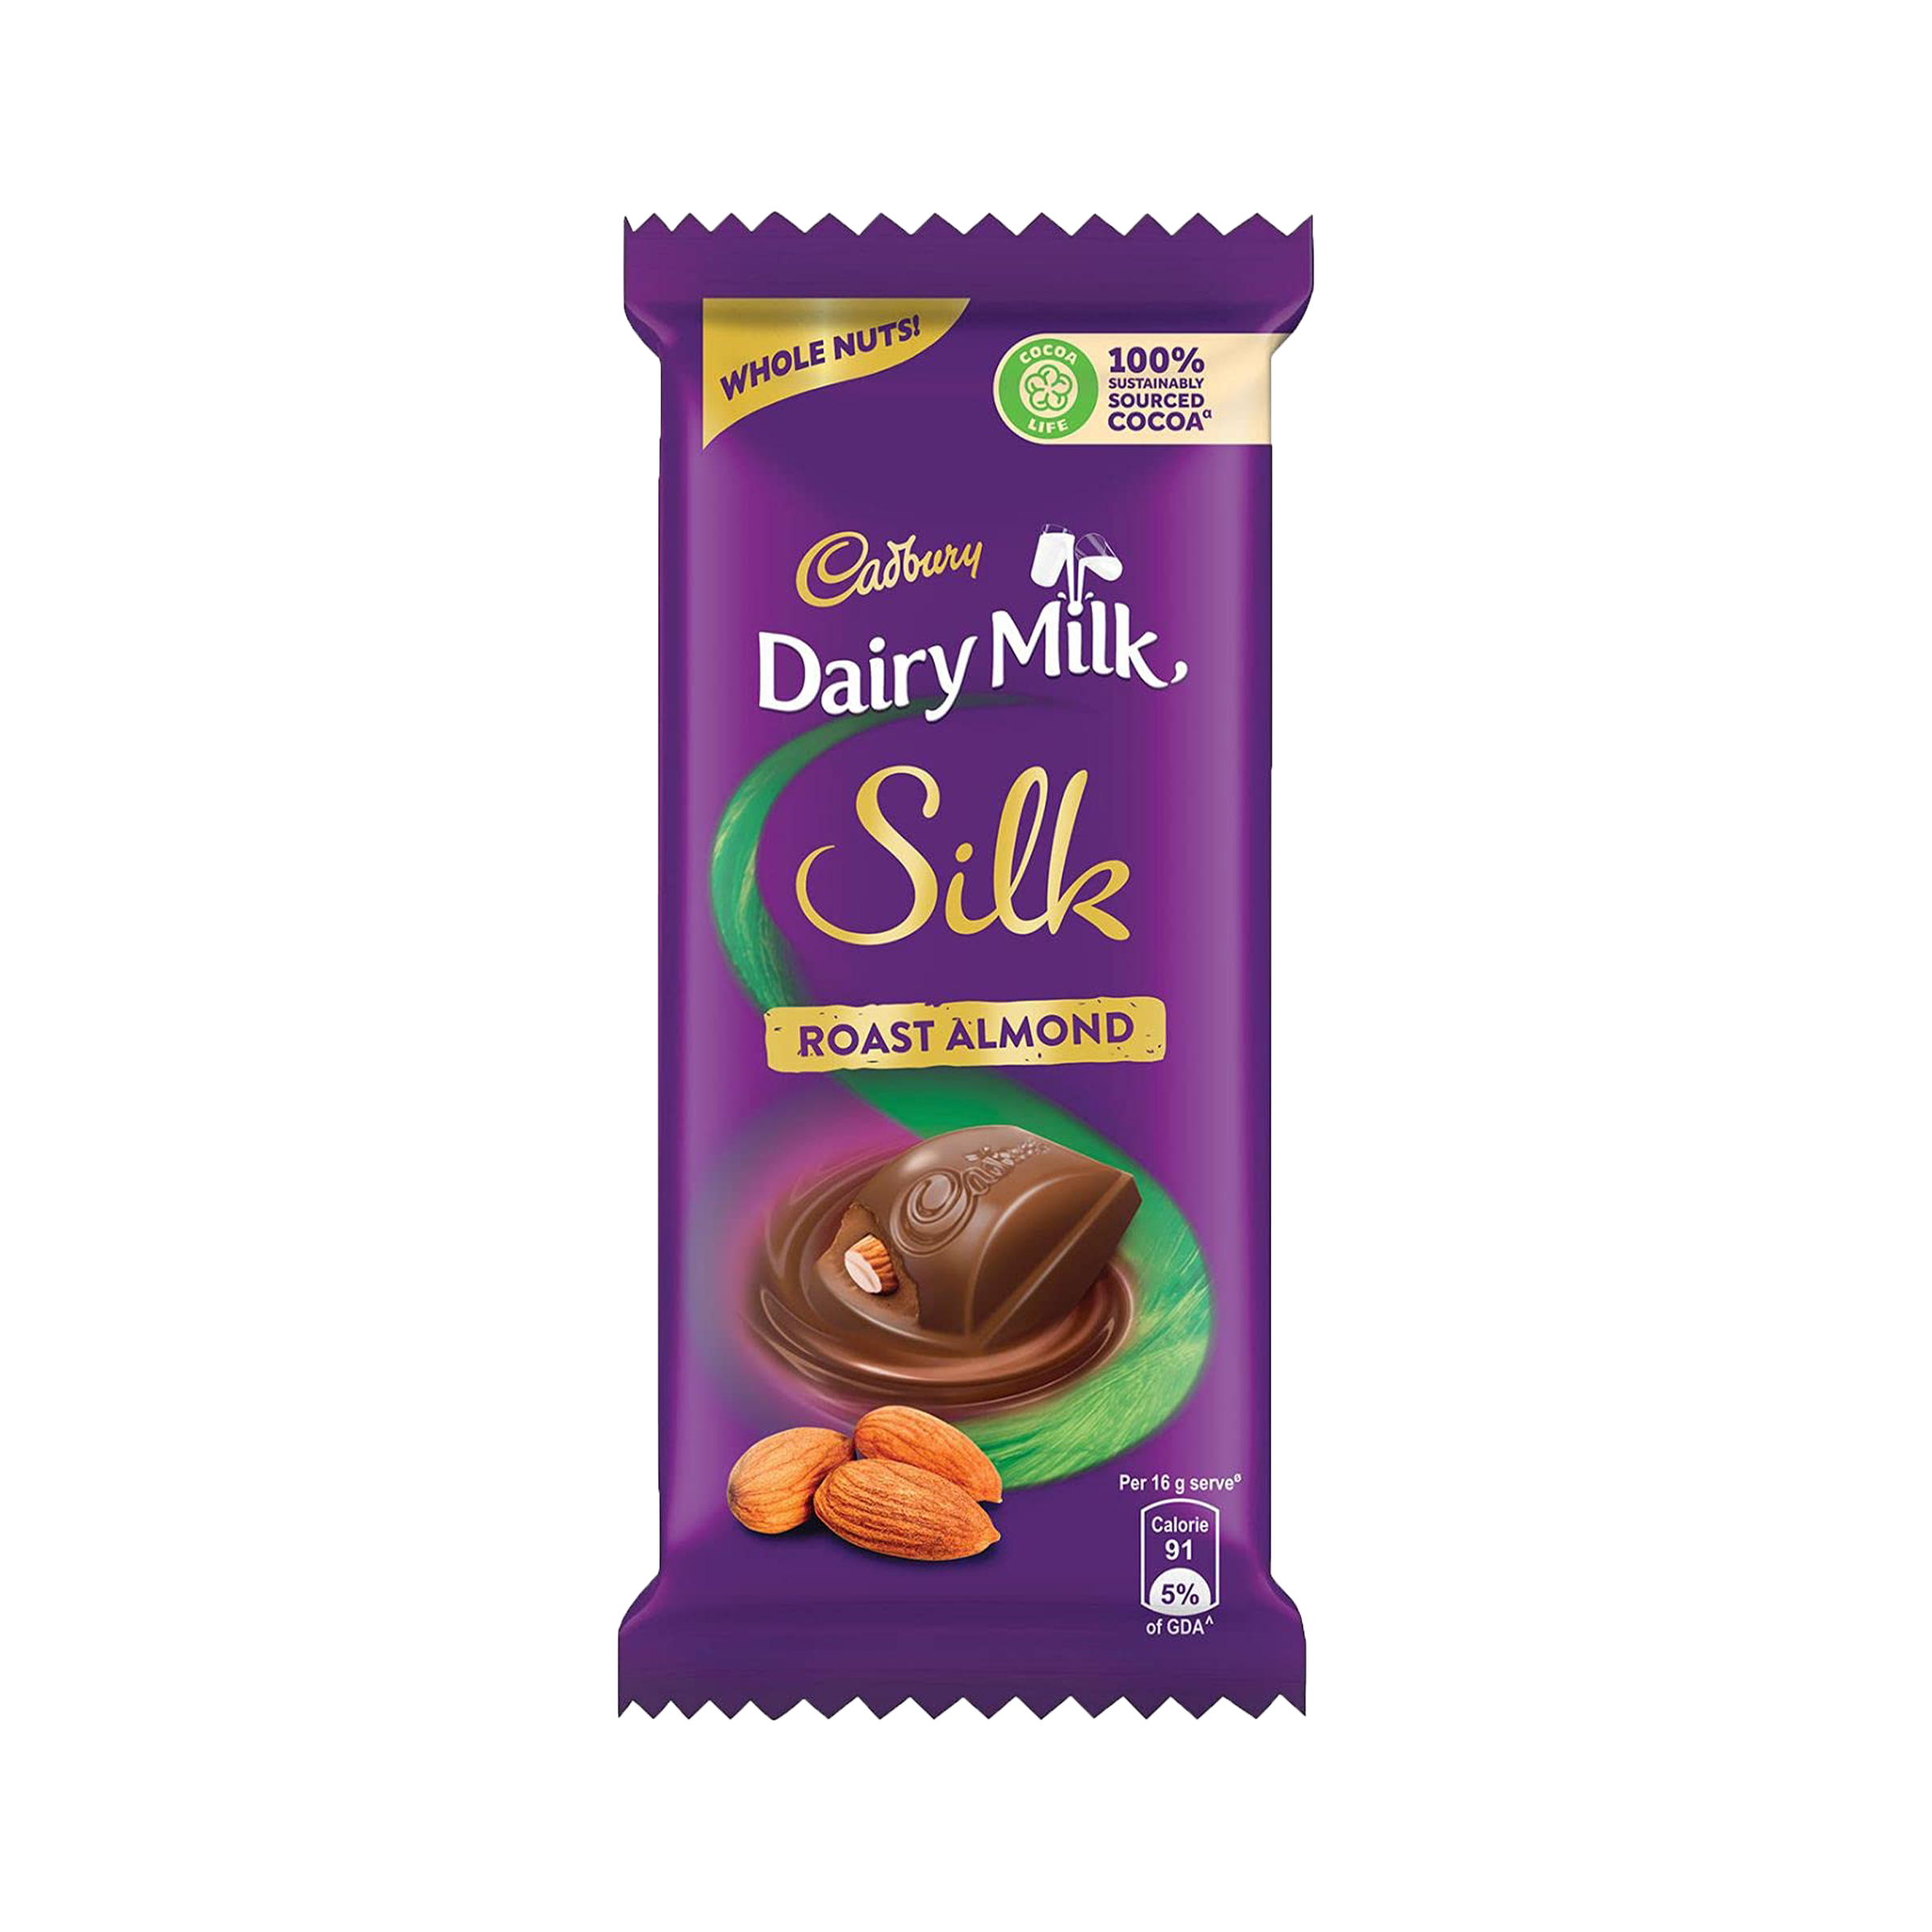 Cadbury Dairy Milk Silk Roast Almond -  India